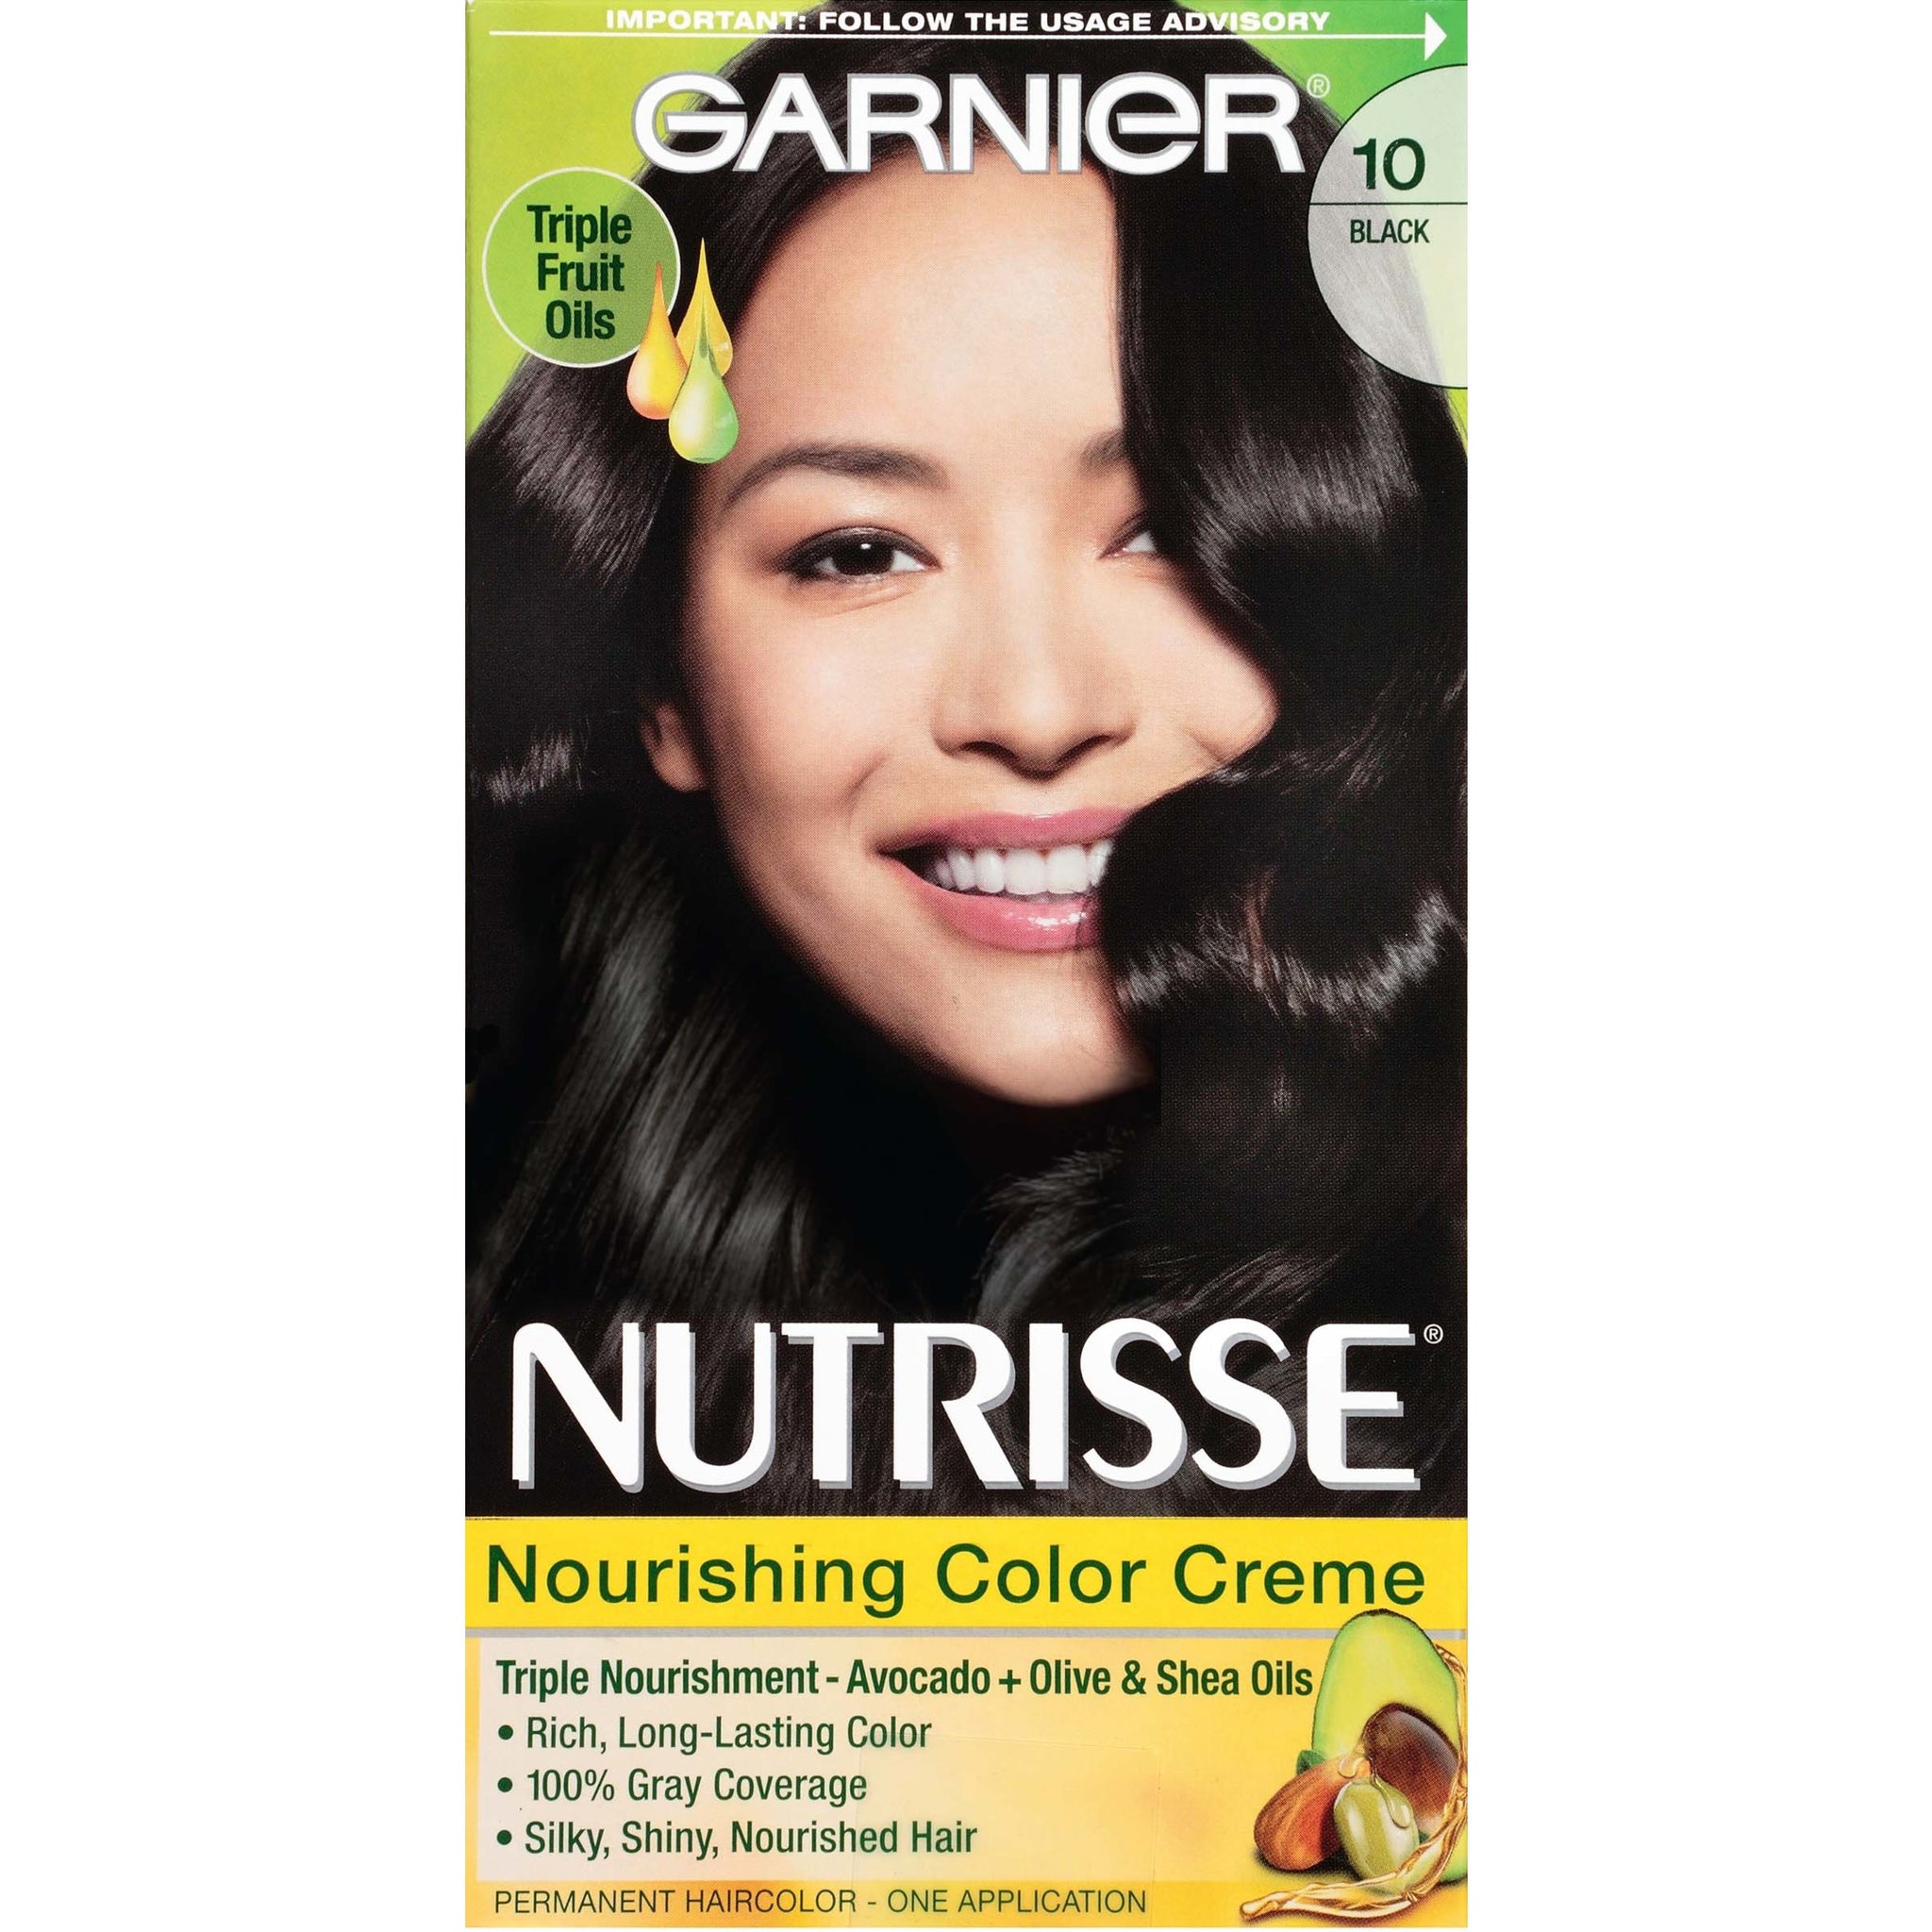 Nutrisse Nourishing Permanent Hair Color Creme